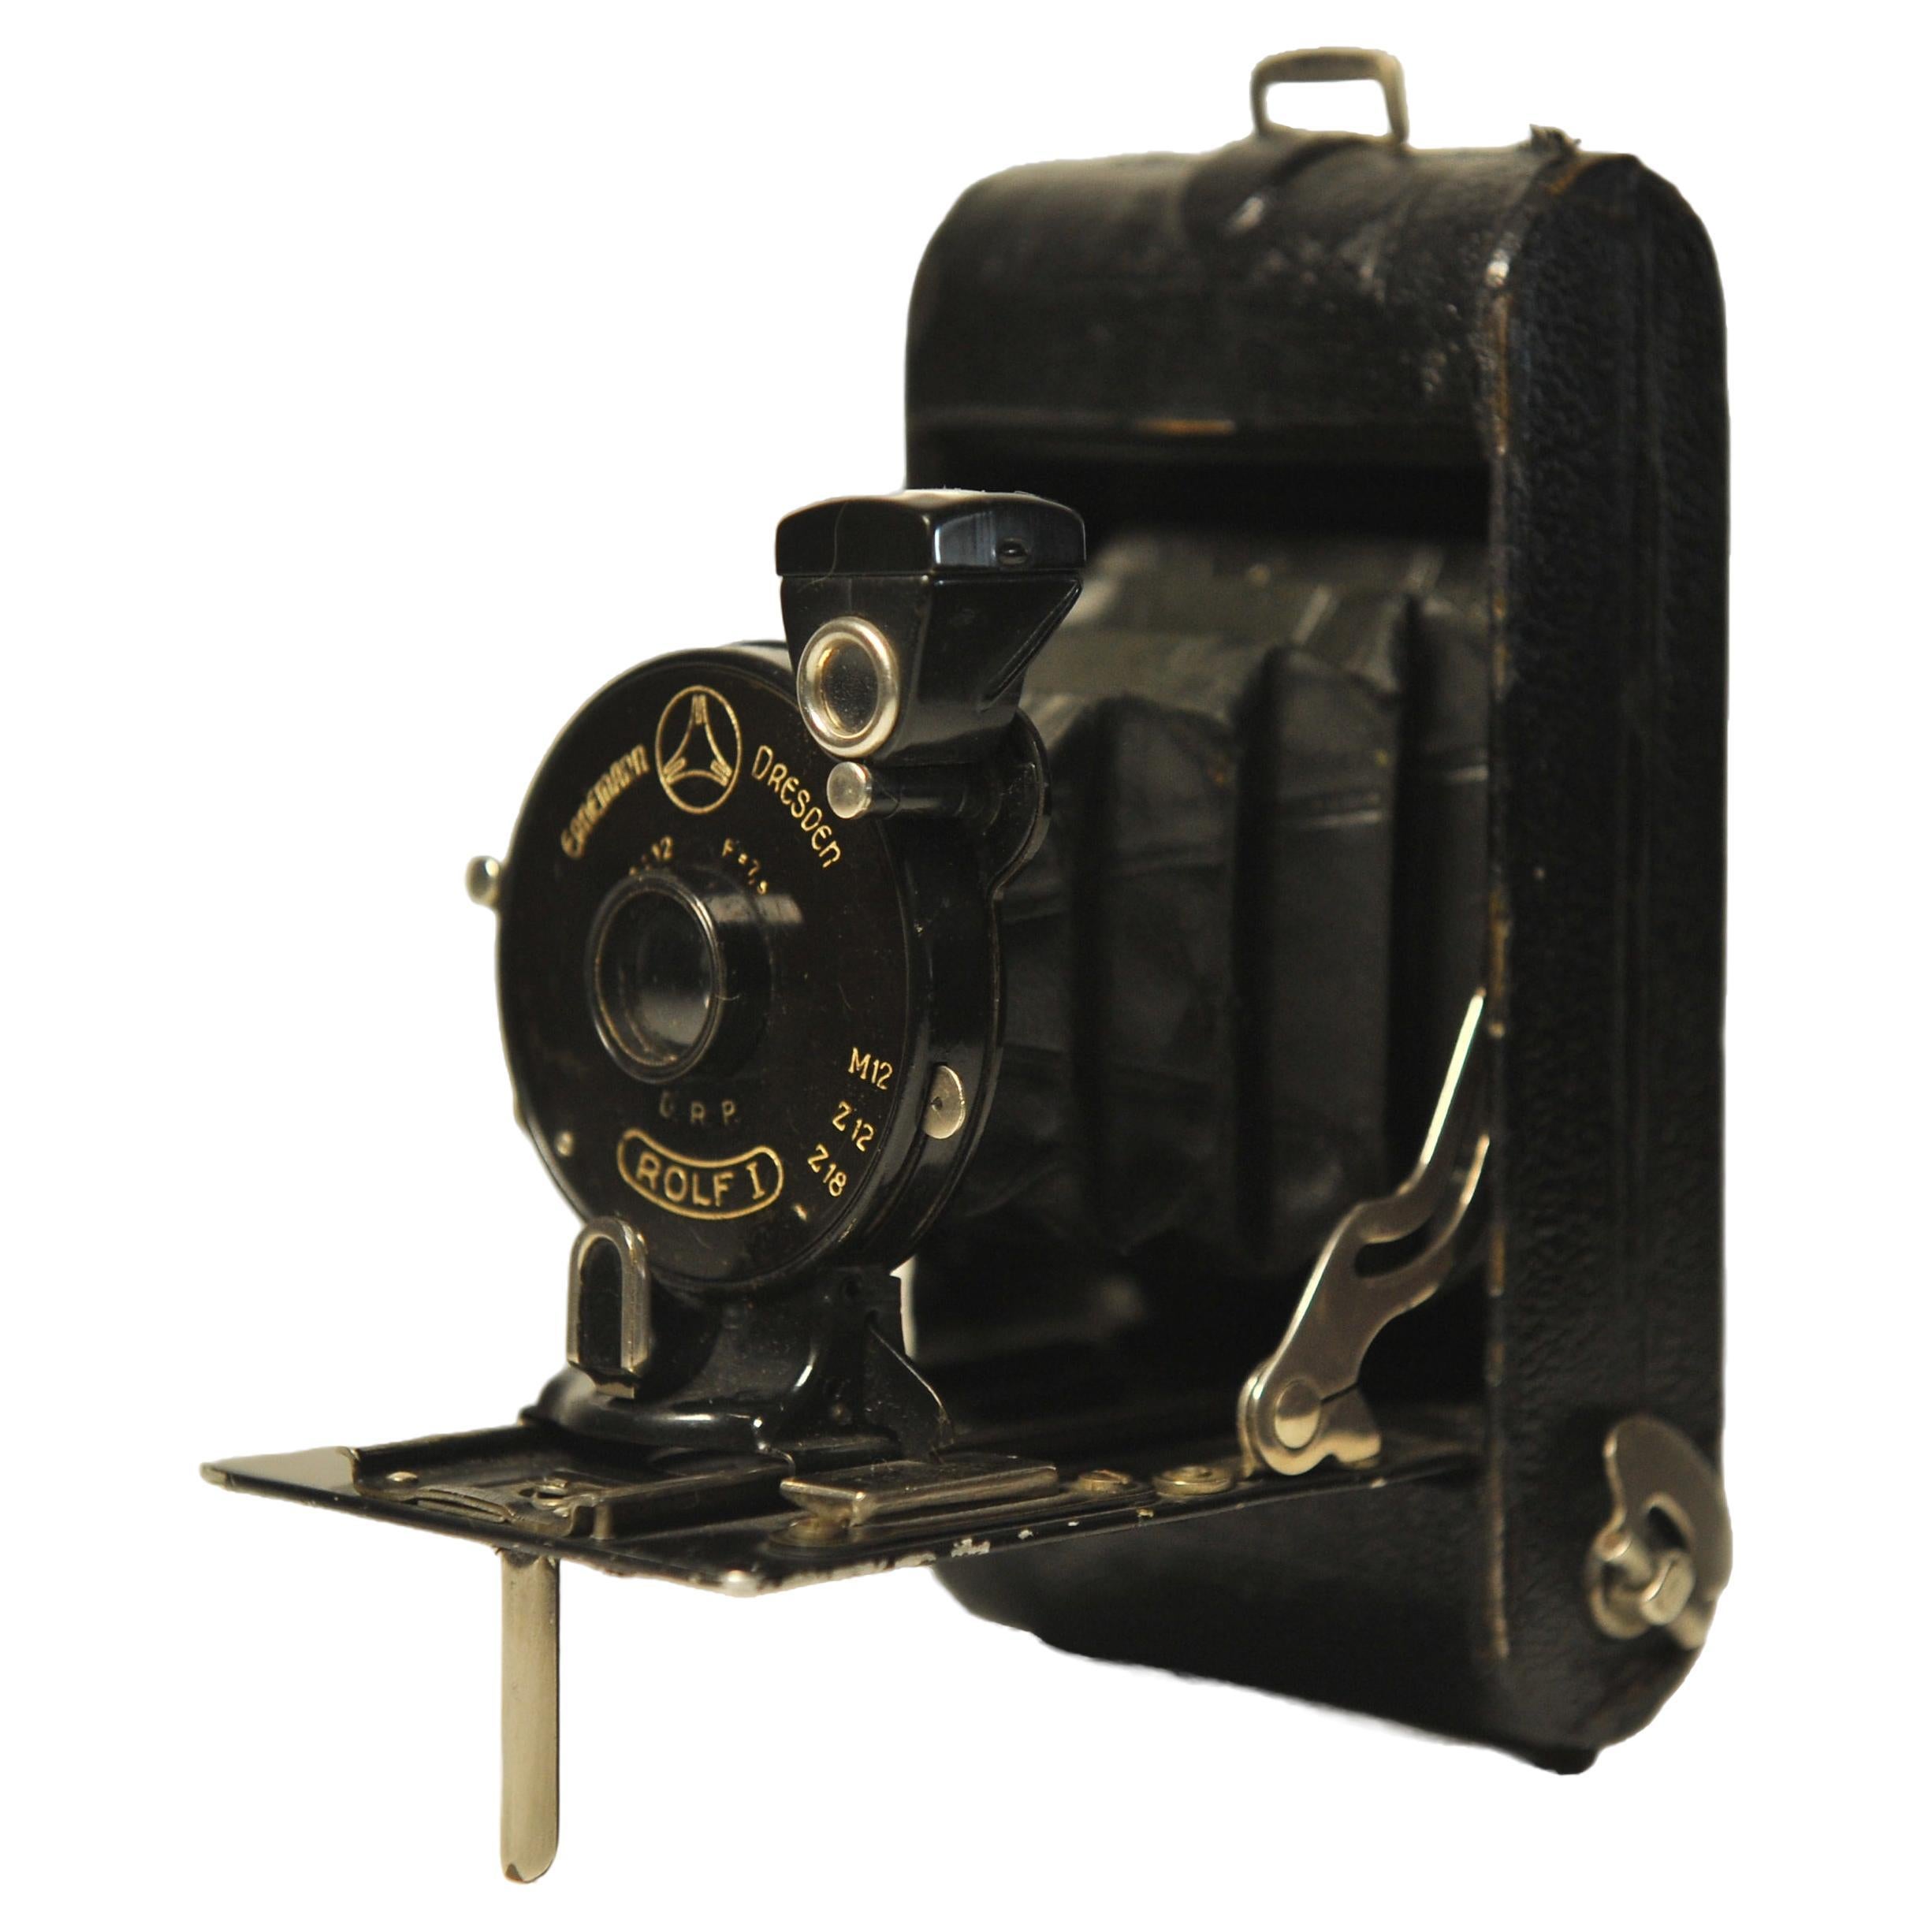 Ernemann ROLF II Klappbare 127 Rollfilm-Kamera mit 75mm F12 Rapid Rectilinear